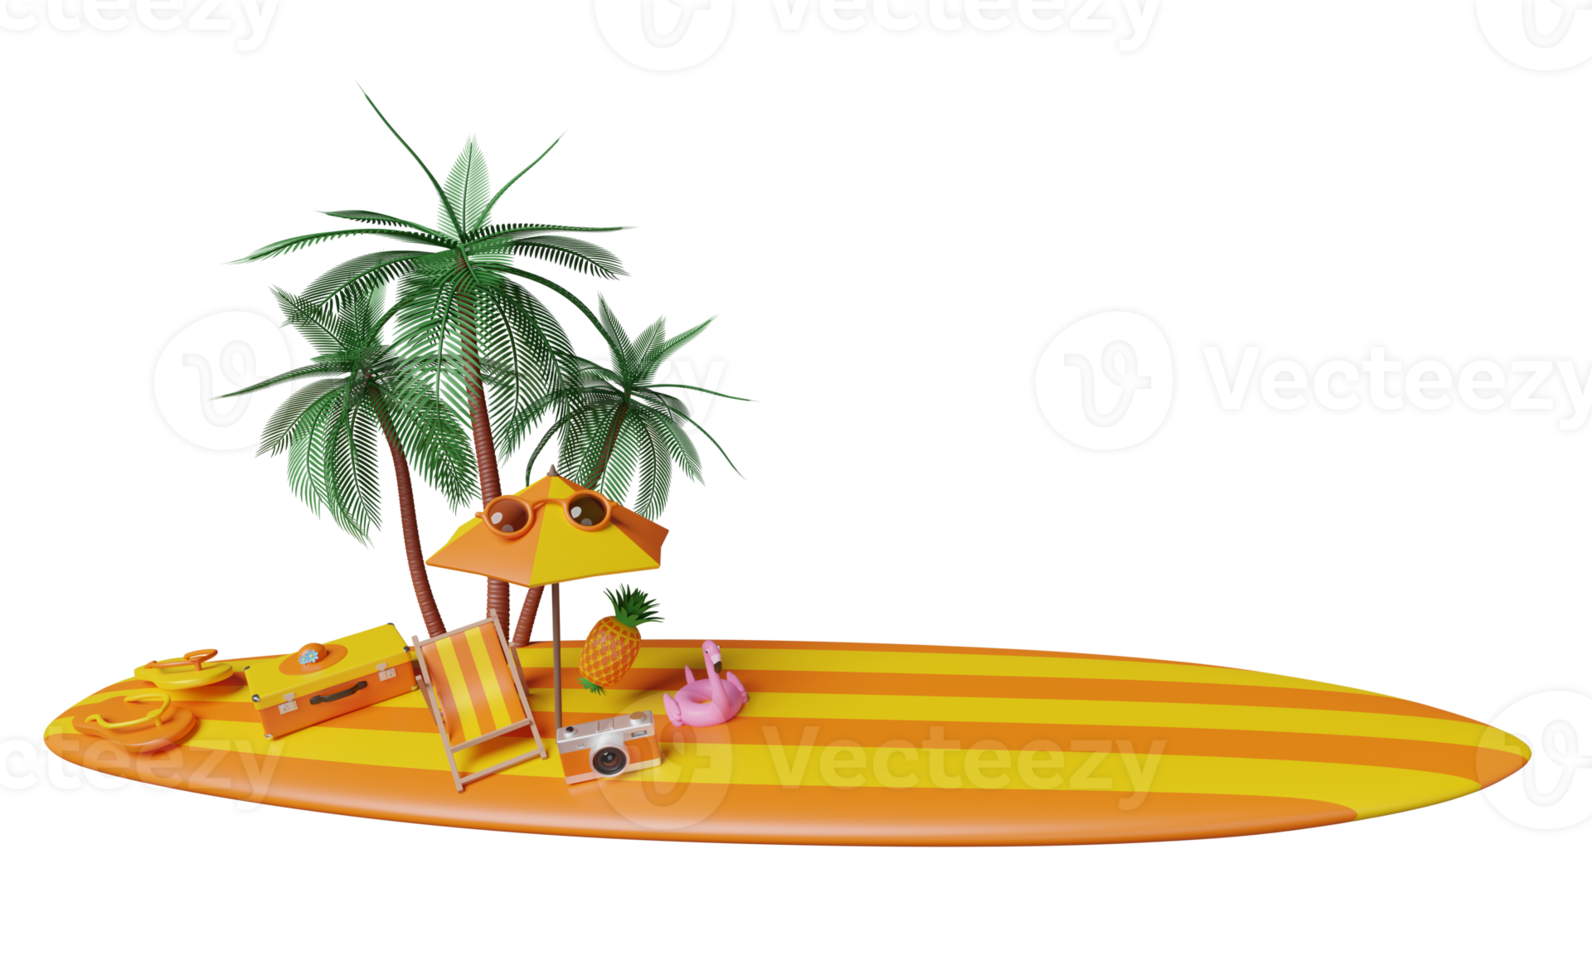 viaje de verano con maleta naranja, silla de playa, sombrilla, gafas de sol, tabla de surf, flamenco inflable, palmera, sandalias, sombrero, cámara aislada. concepto de ilustración 3d o renderizado 3d png